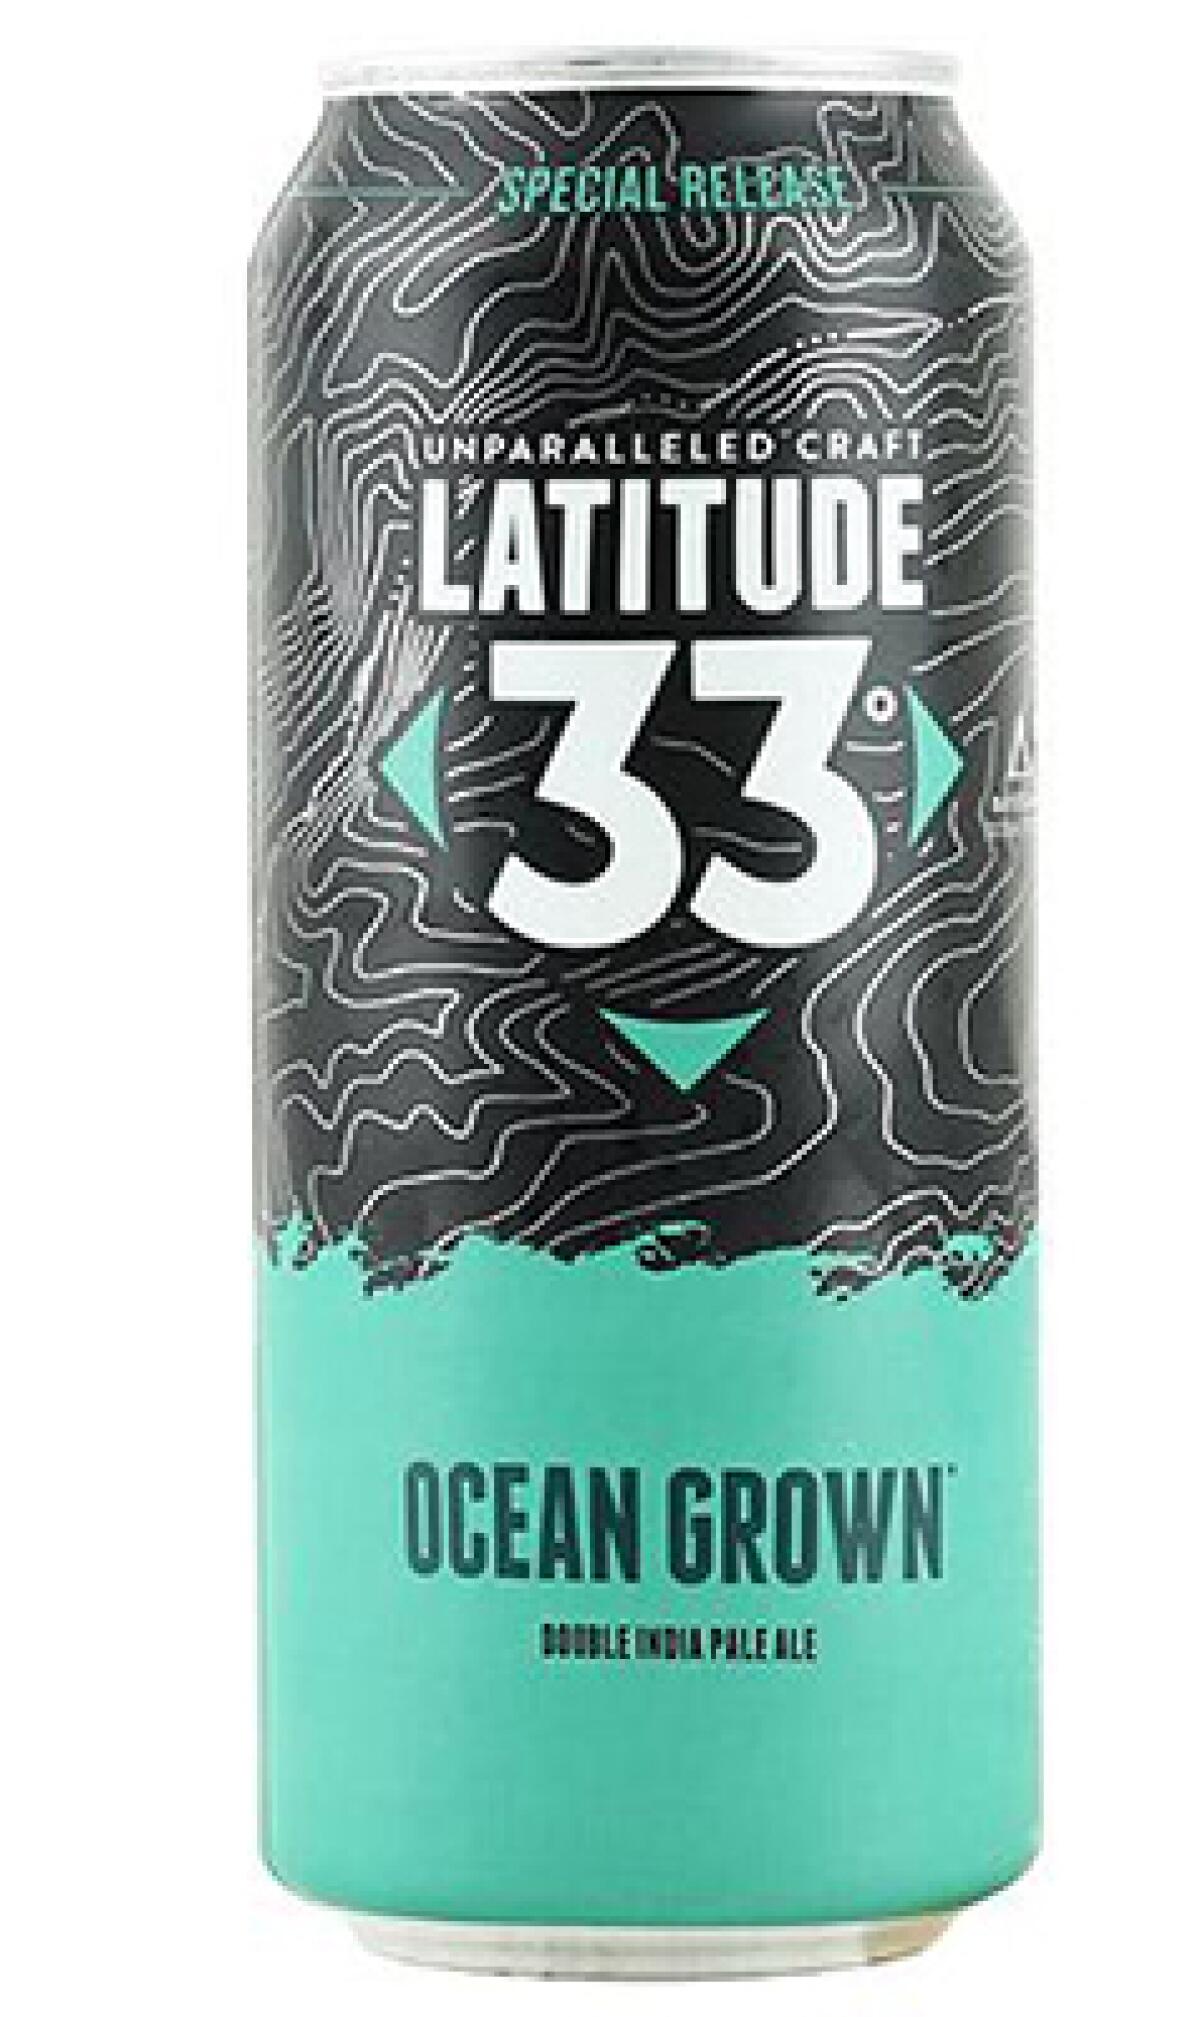 Ocean Grown by Latitude 33